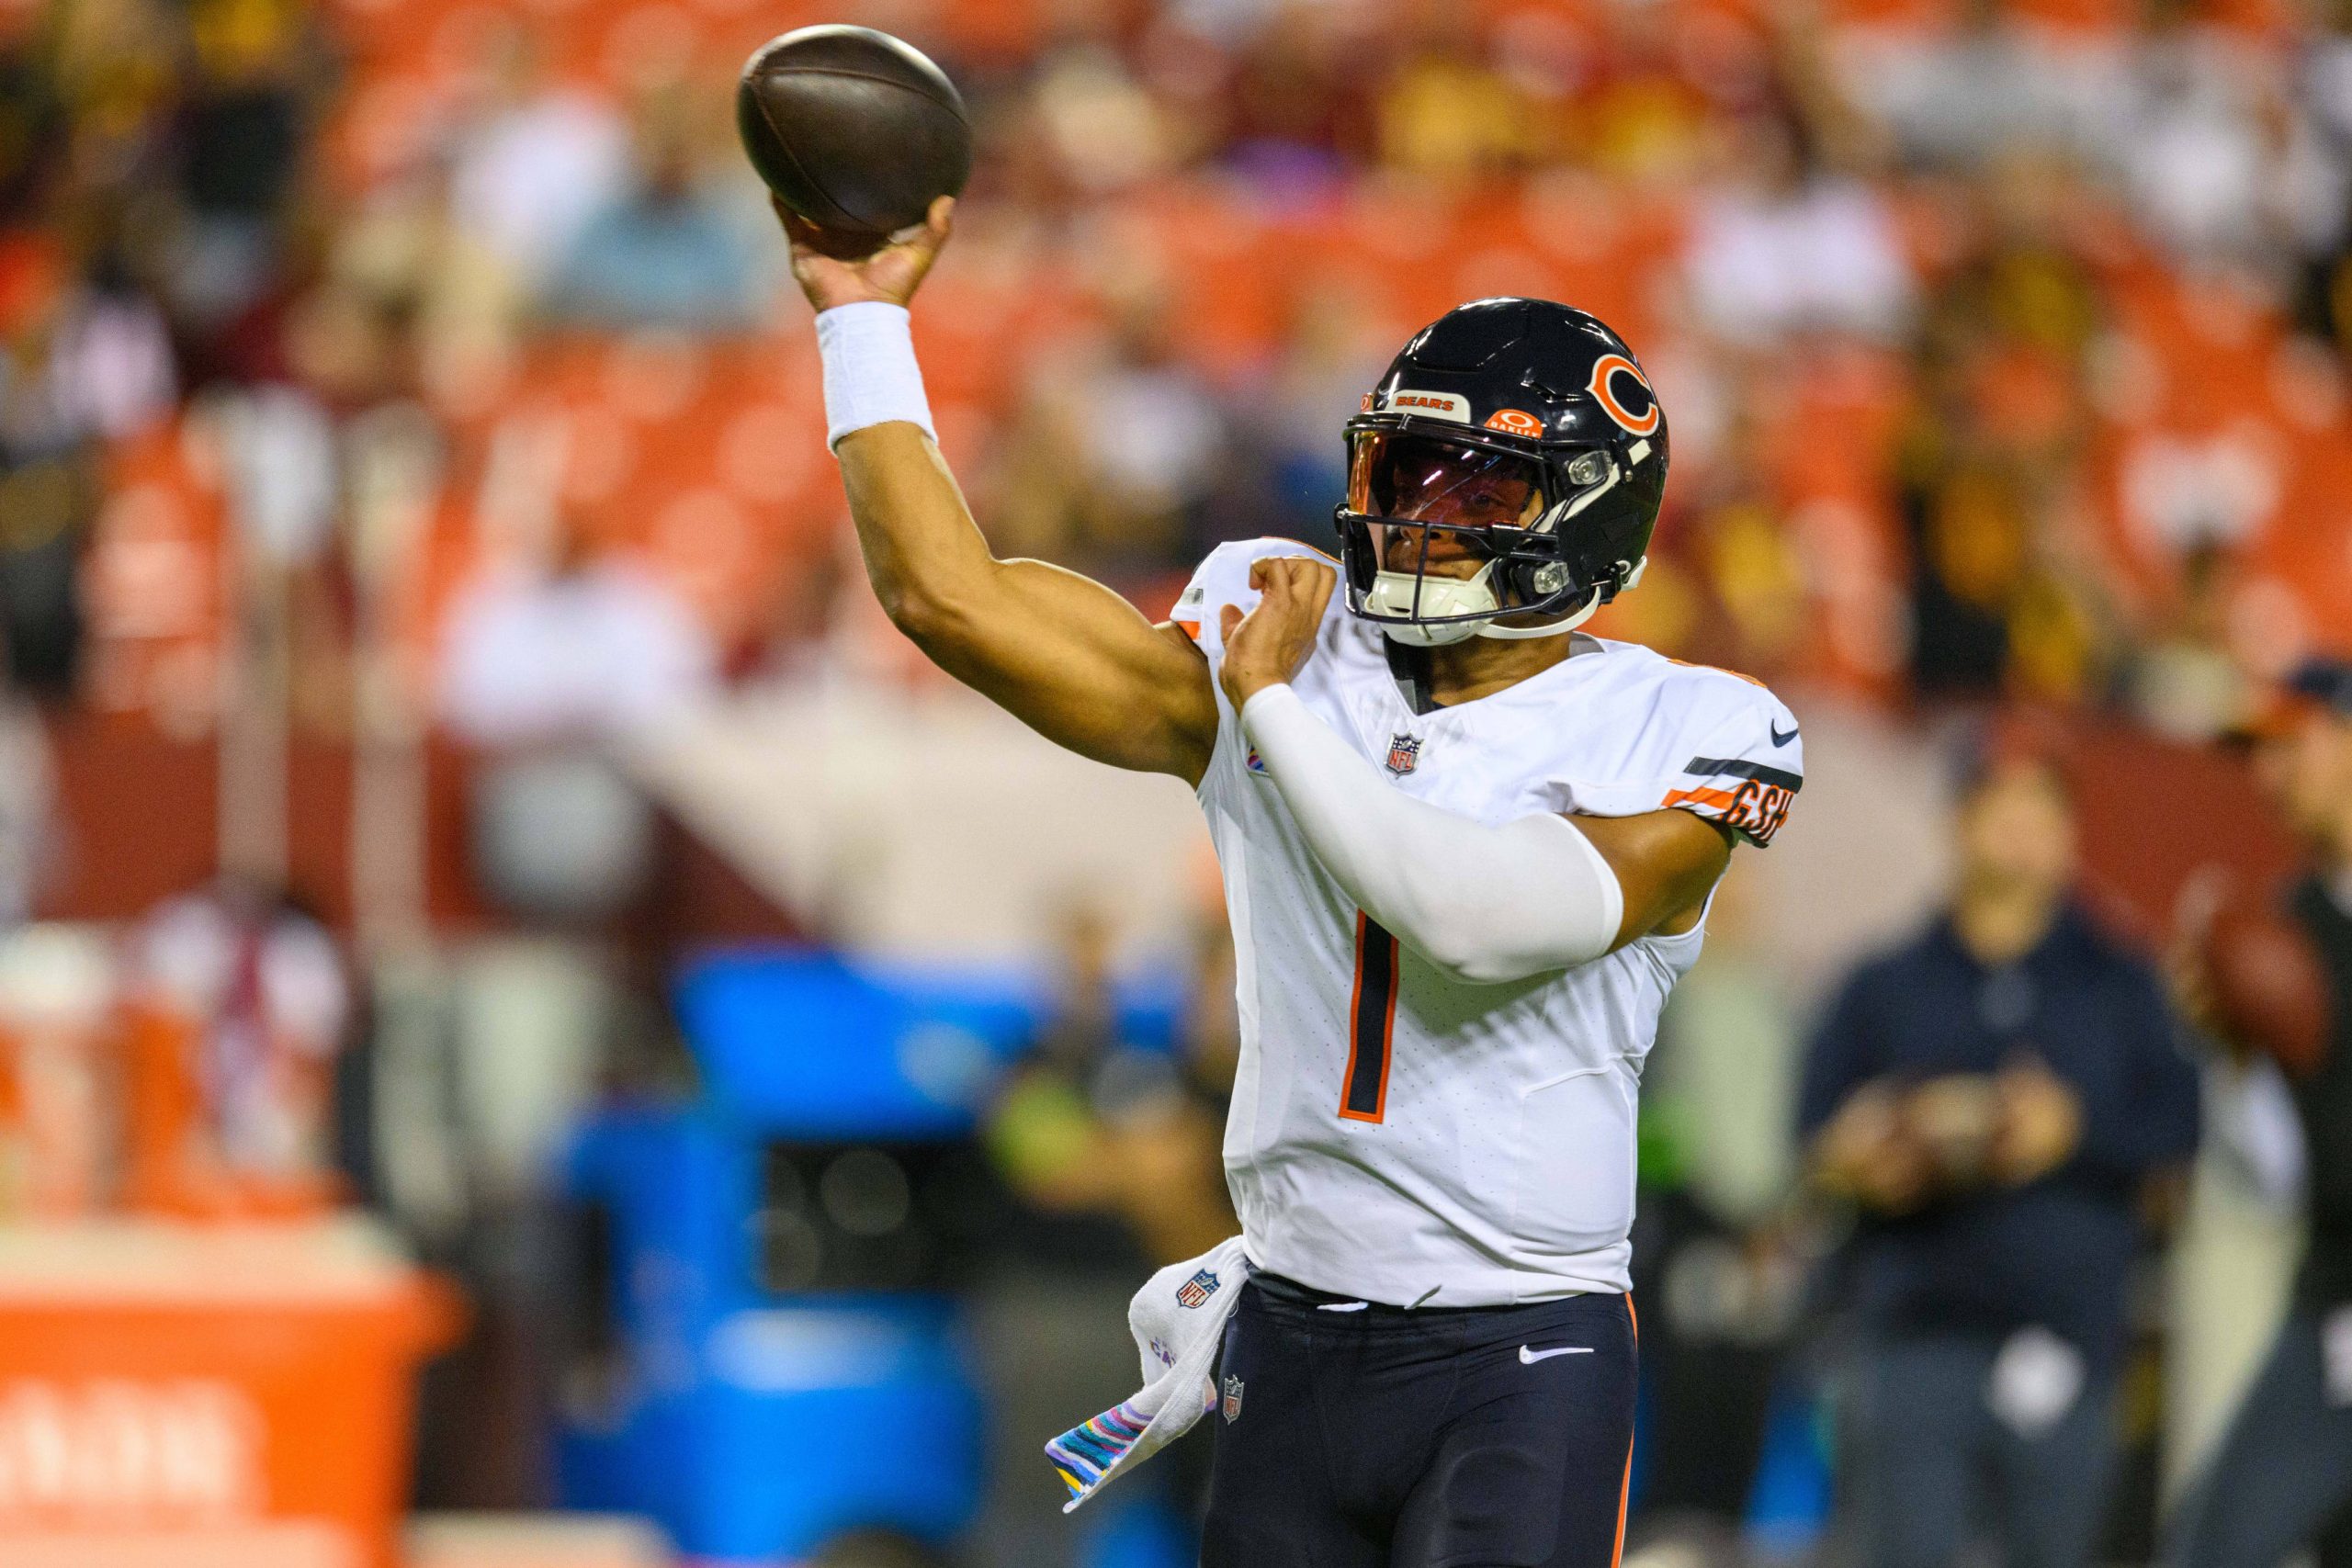 FootballR - NFL - Der Quarterback der Chicago Bears wirft den Ball während eines Spiels. Justin Fields